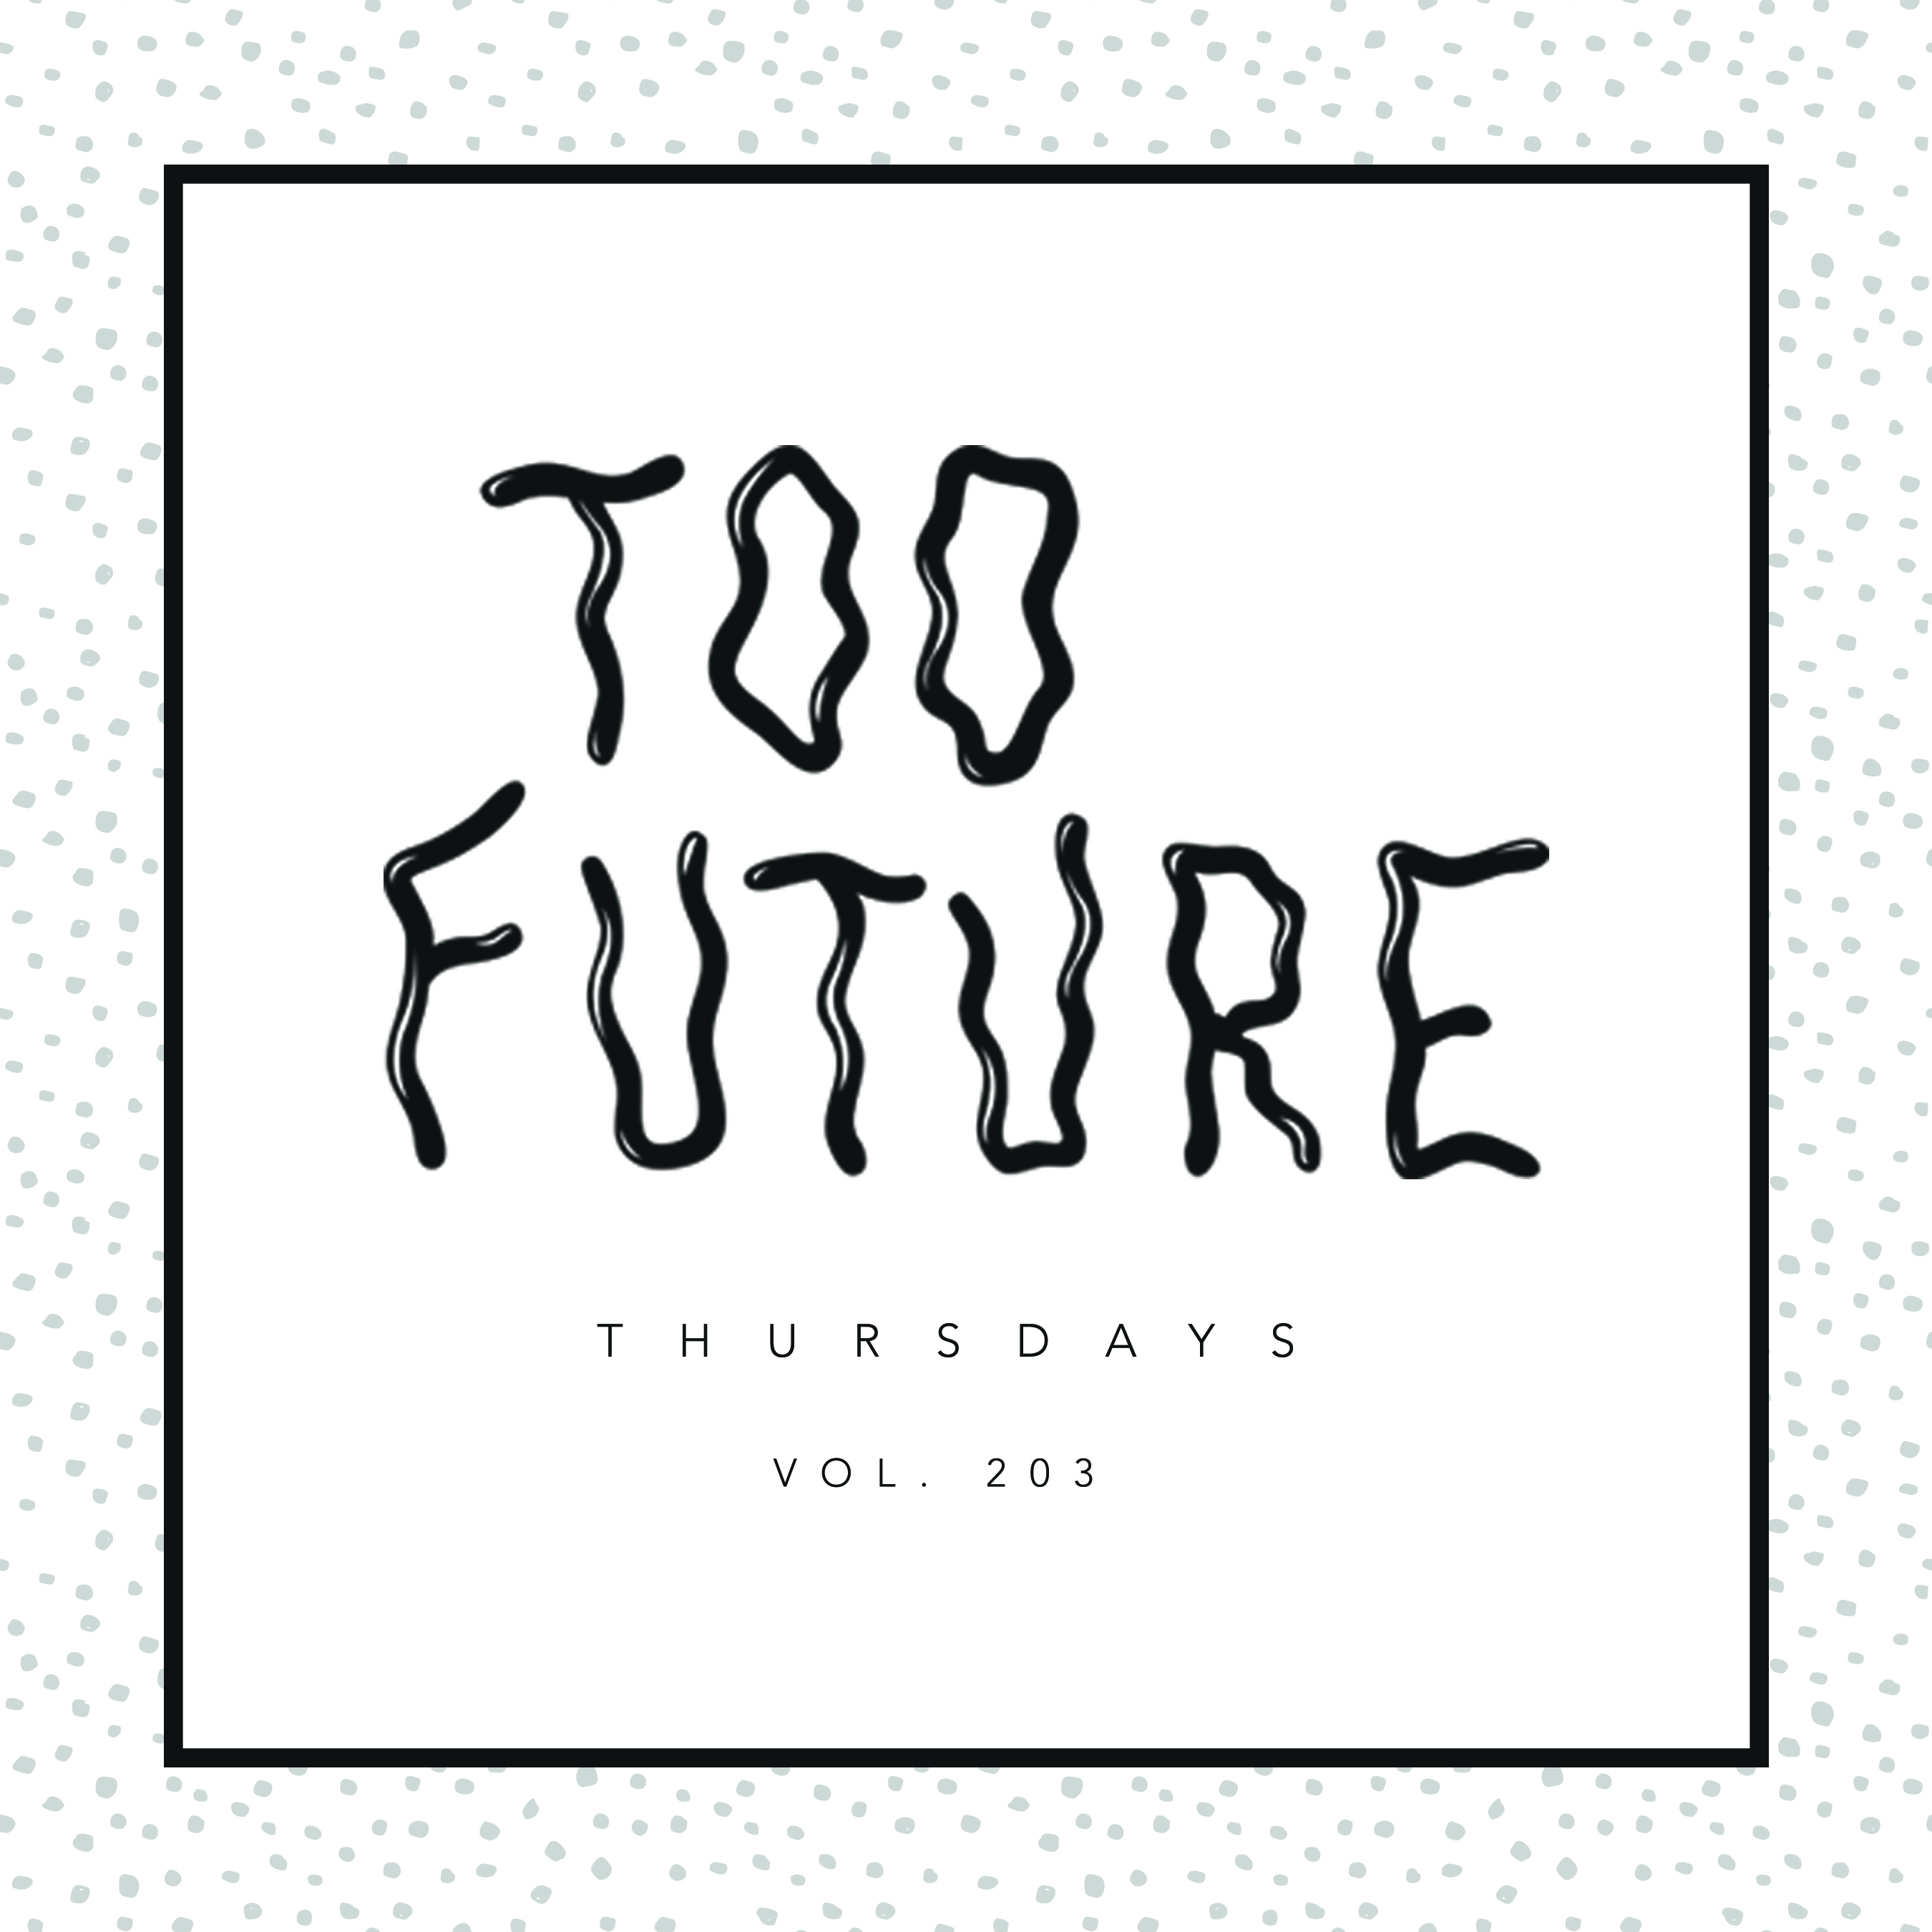 too-future-thursdays-vol-203